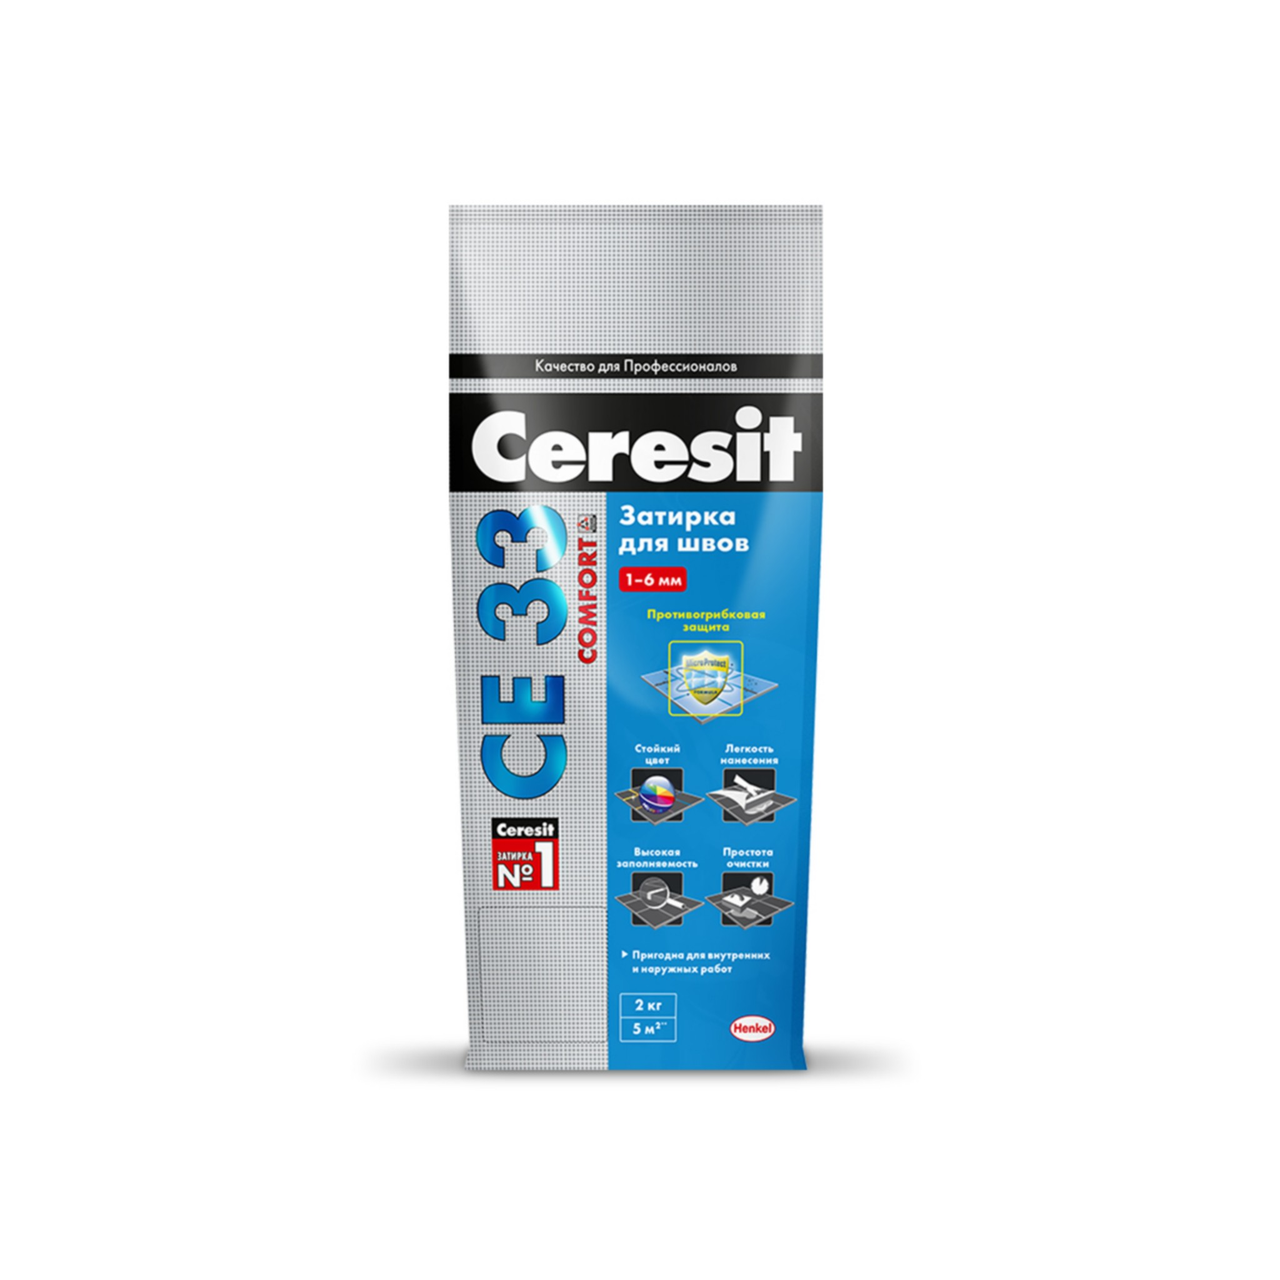 Ceresit  CE 33 Comfort затирка для узких швов, цвет: Серый (Grey), 5 кг